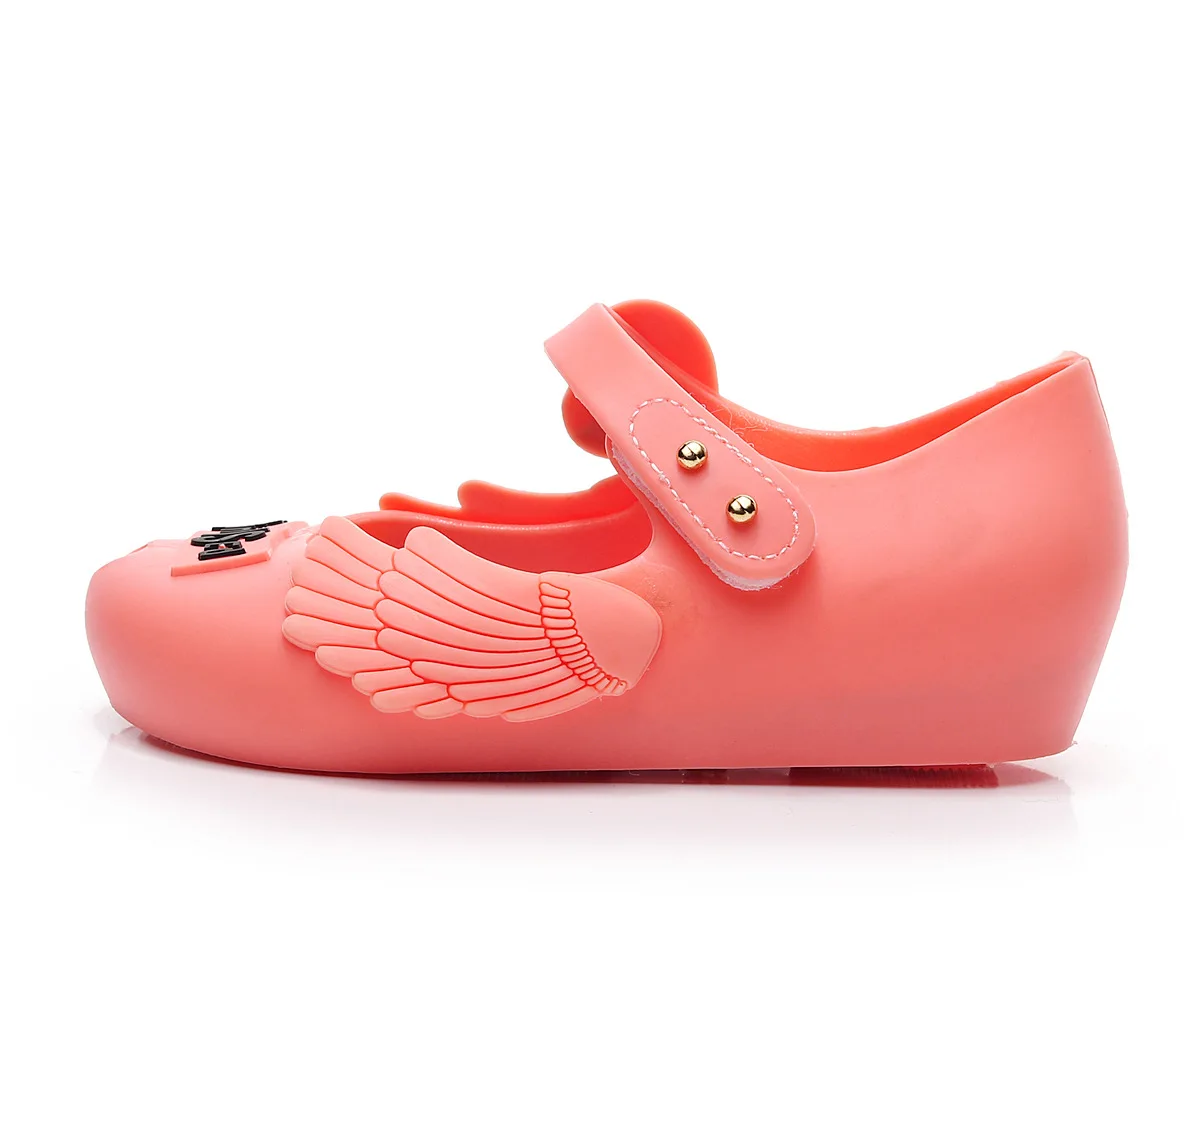 Мини Sed детская обувь модная ароматная силиконовая обувь для девочек Фламинго печати граффити ПВХ мягкая подошва детские сандалии большой размер